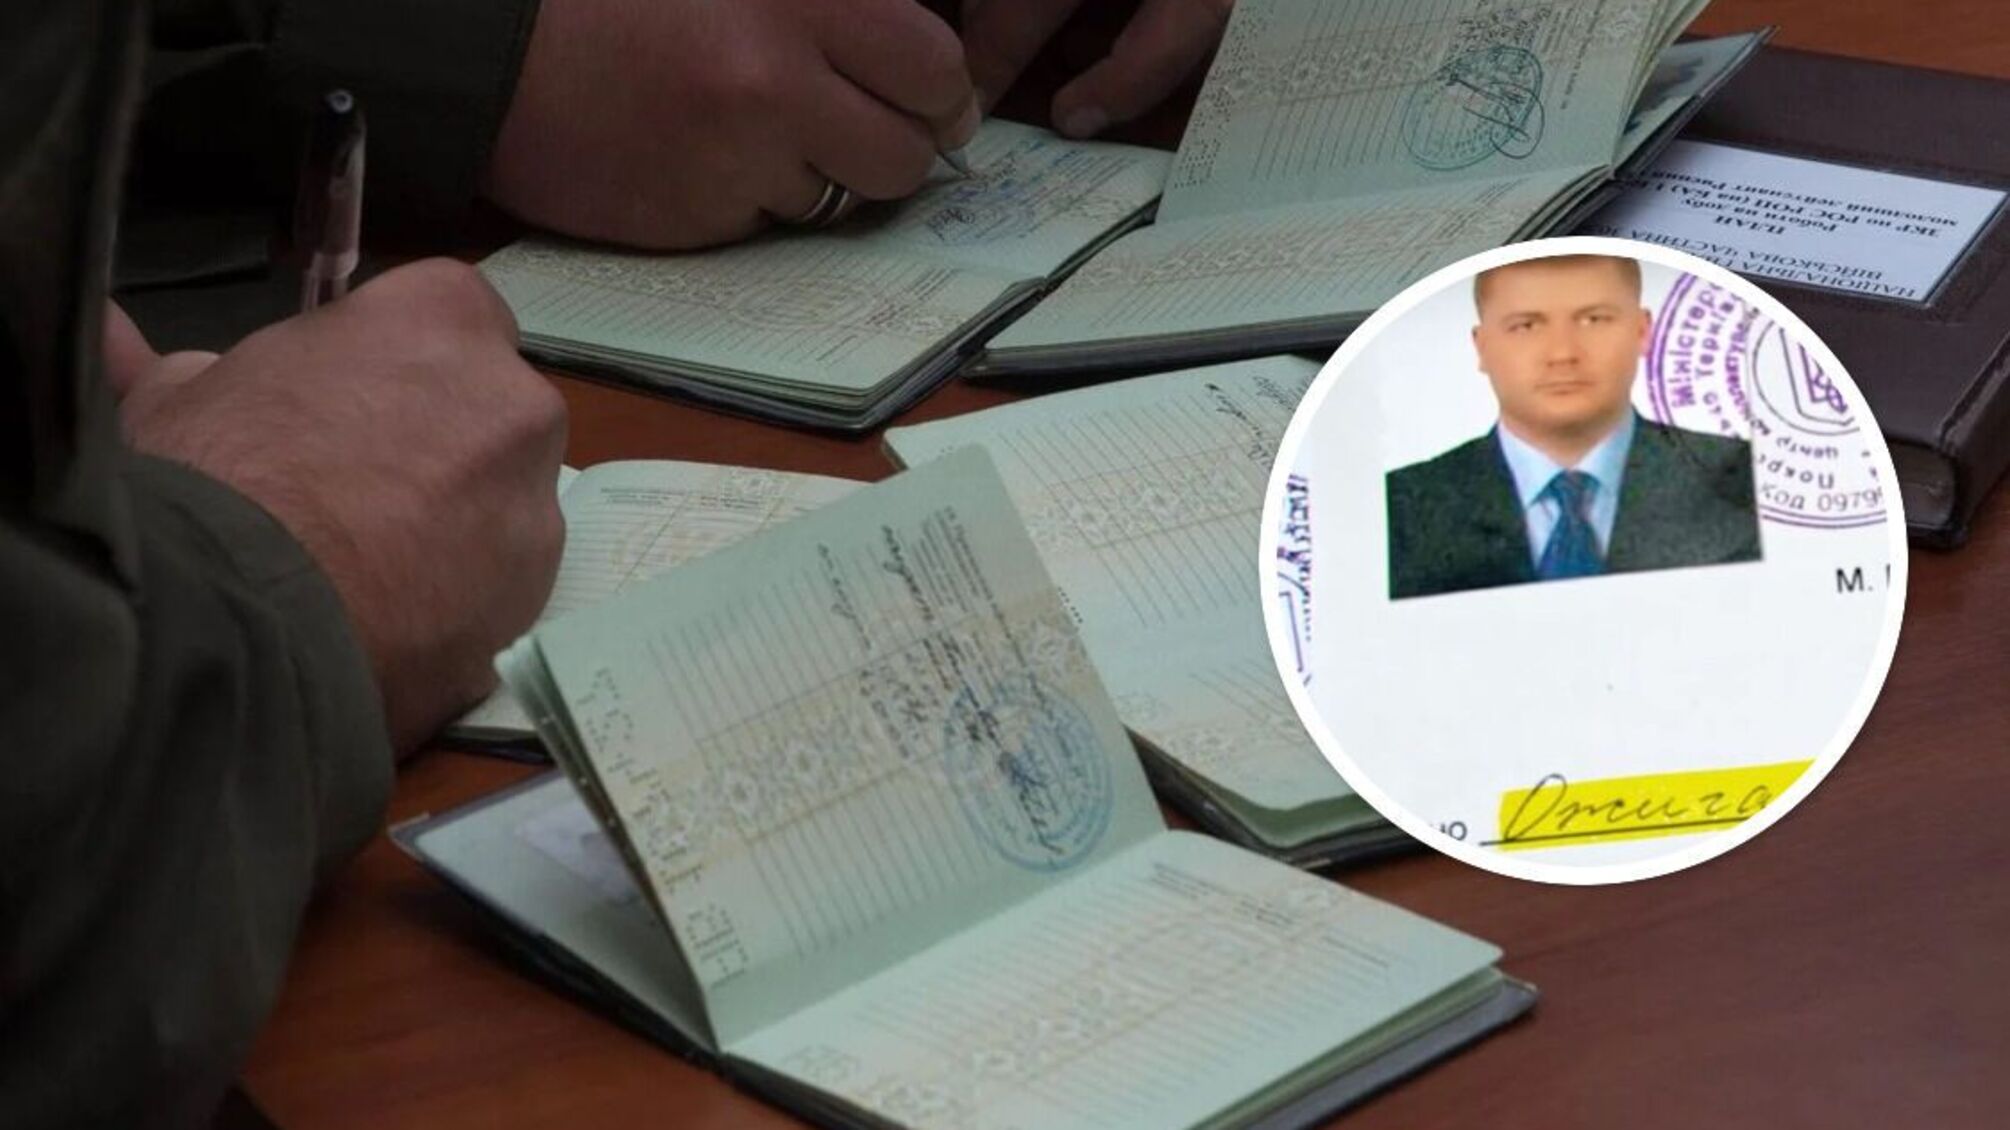 Лідер криворізької банди 'Двадцятівські' Ожиганов отримав 'білий квиток': правоохоронці розслідують законність документу